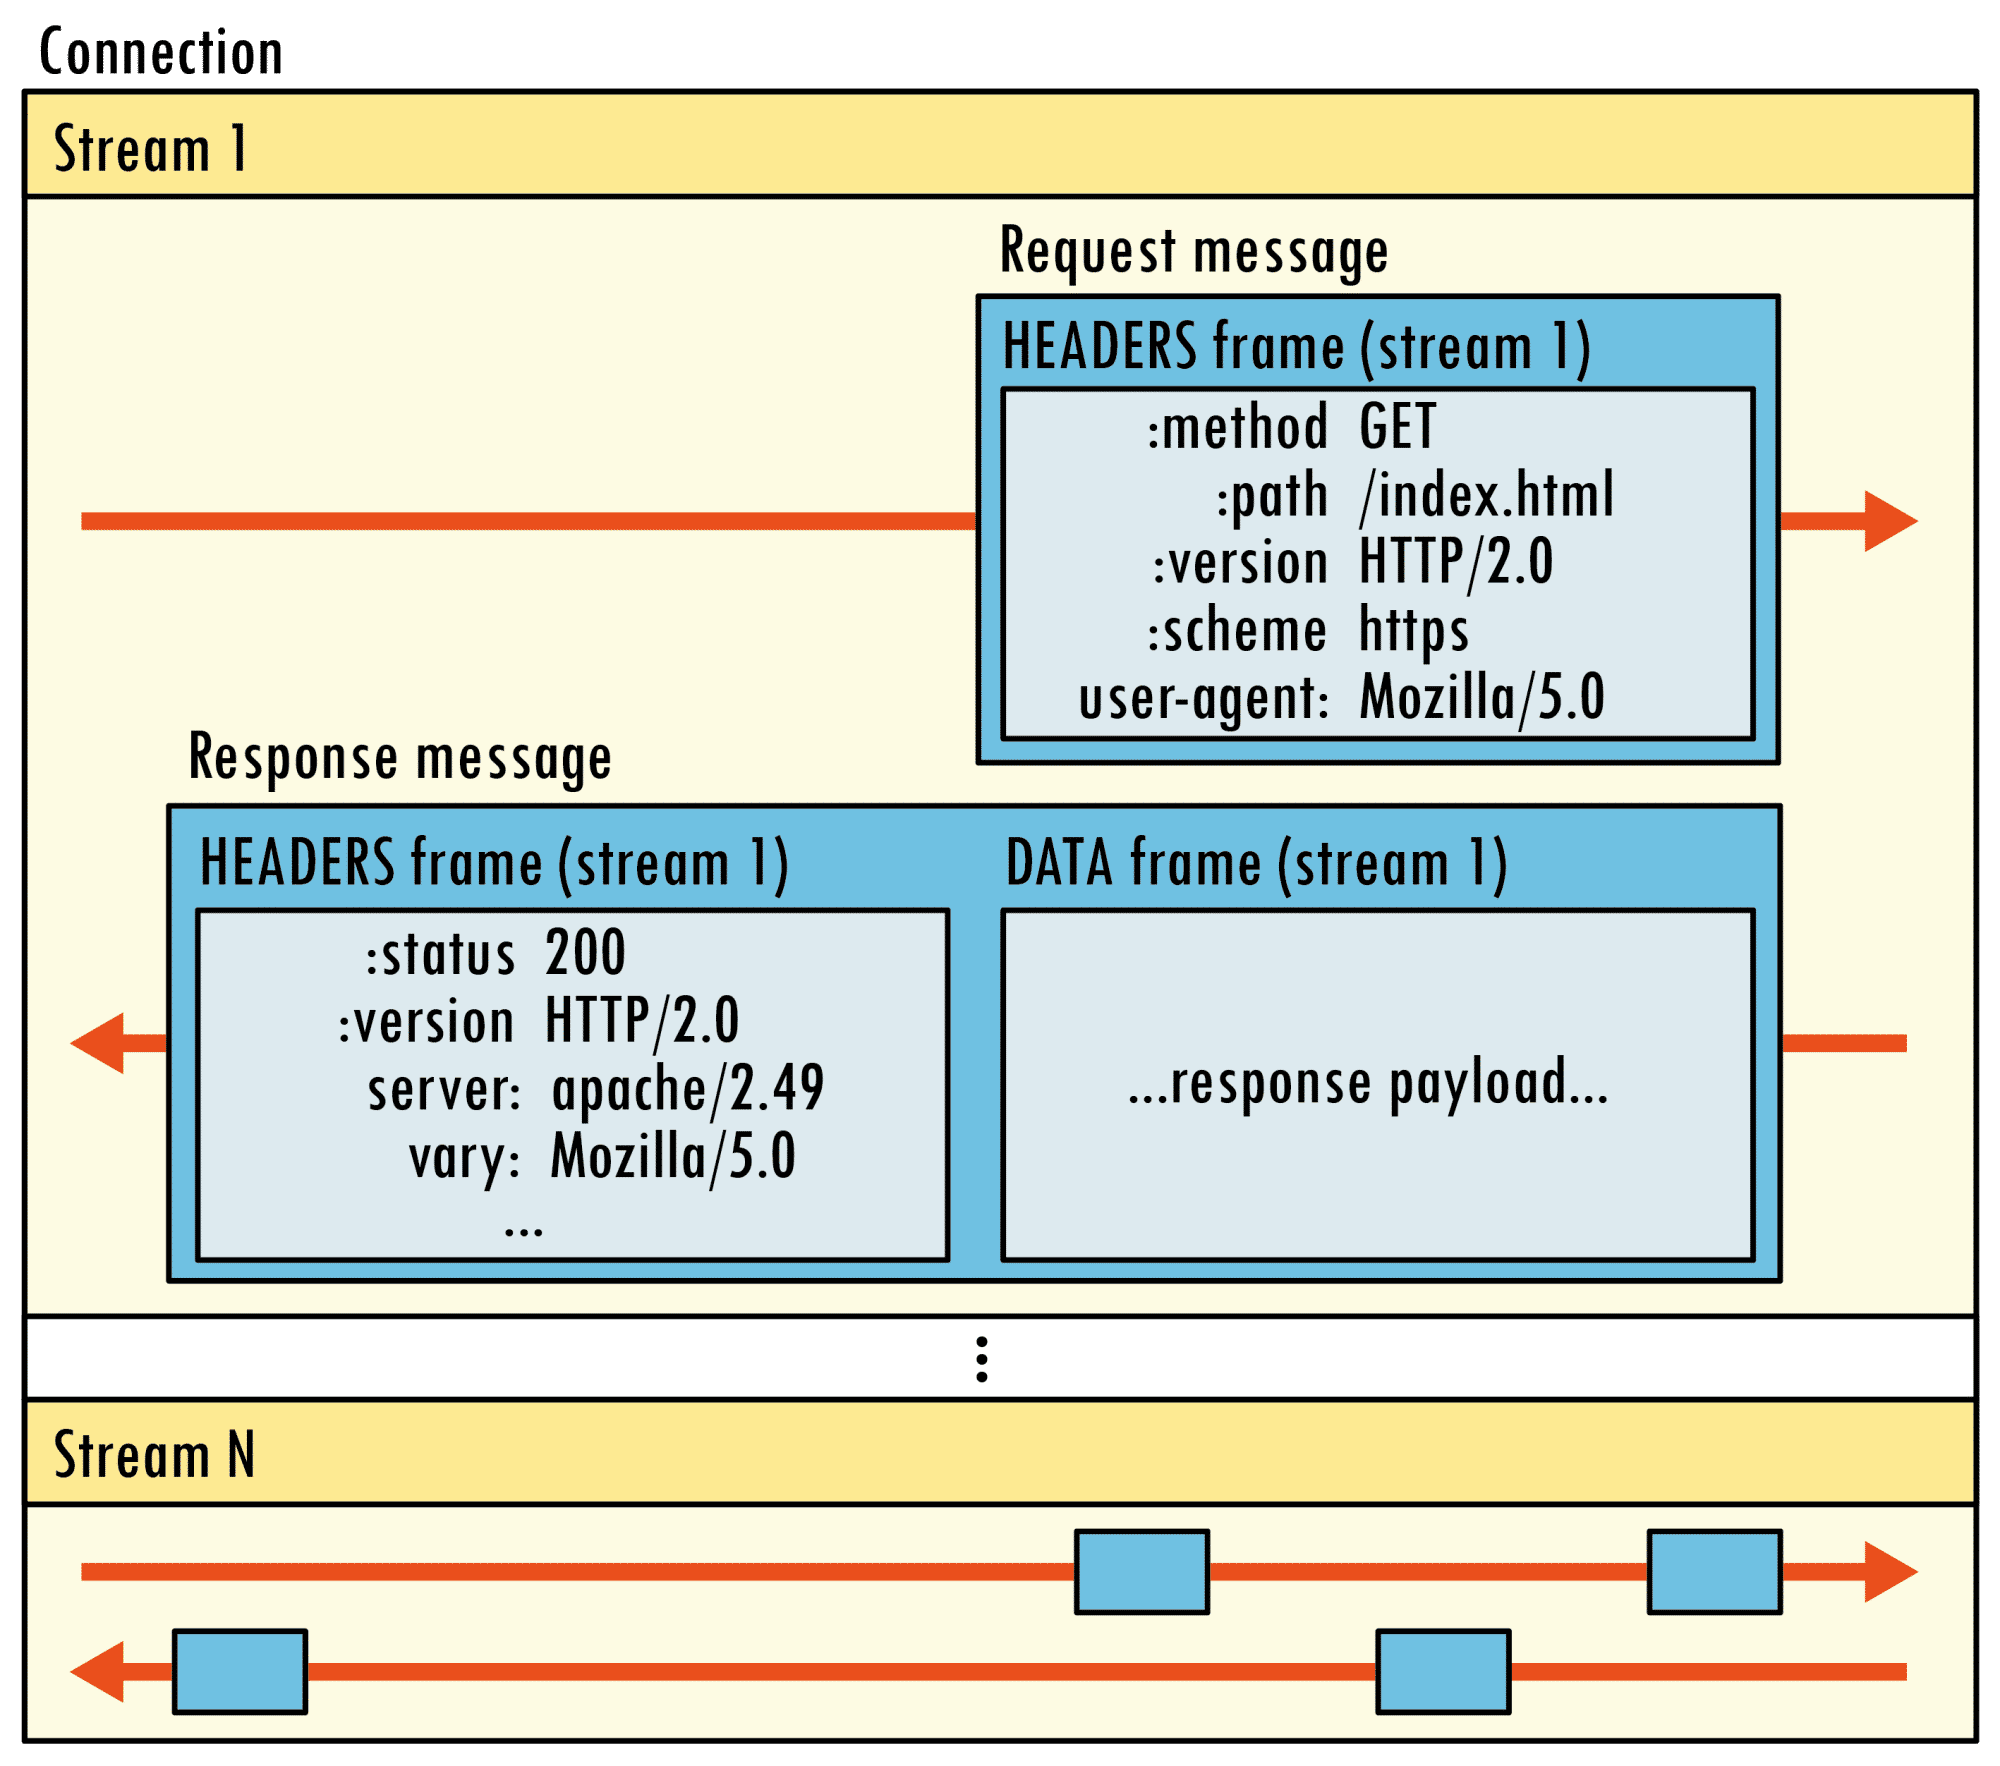 Mit dem neuen Binary-Framing-Mechanismus ändert HTTP 2.0 die Art, wie Client und Server kommunizieren. Mittels Streams können sie mehrere Elemente verschränkt, also per Multiplexverfahren gleichzeitig übertragen. Darin setzen sich Messages aus einzelnen Frames zusammen. Die Frame-Header enthalten Stream-IDs, sodass sie der Empfänger einzelnen Streams zuordnen, also demultiplexen kann.